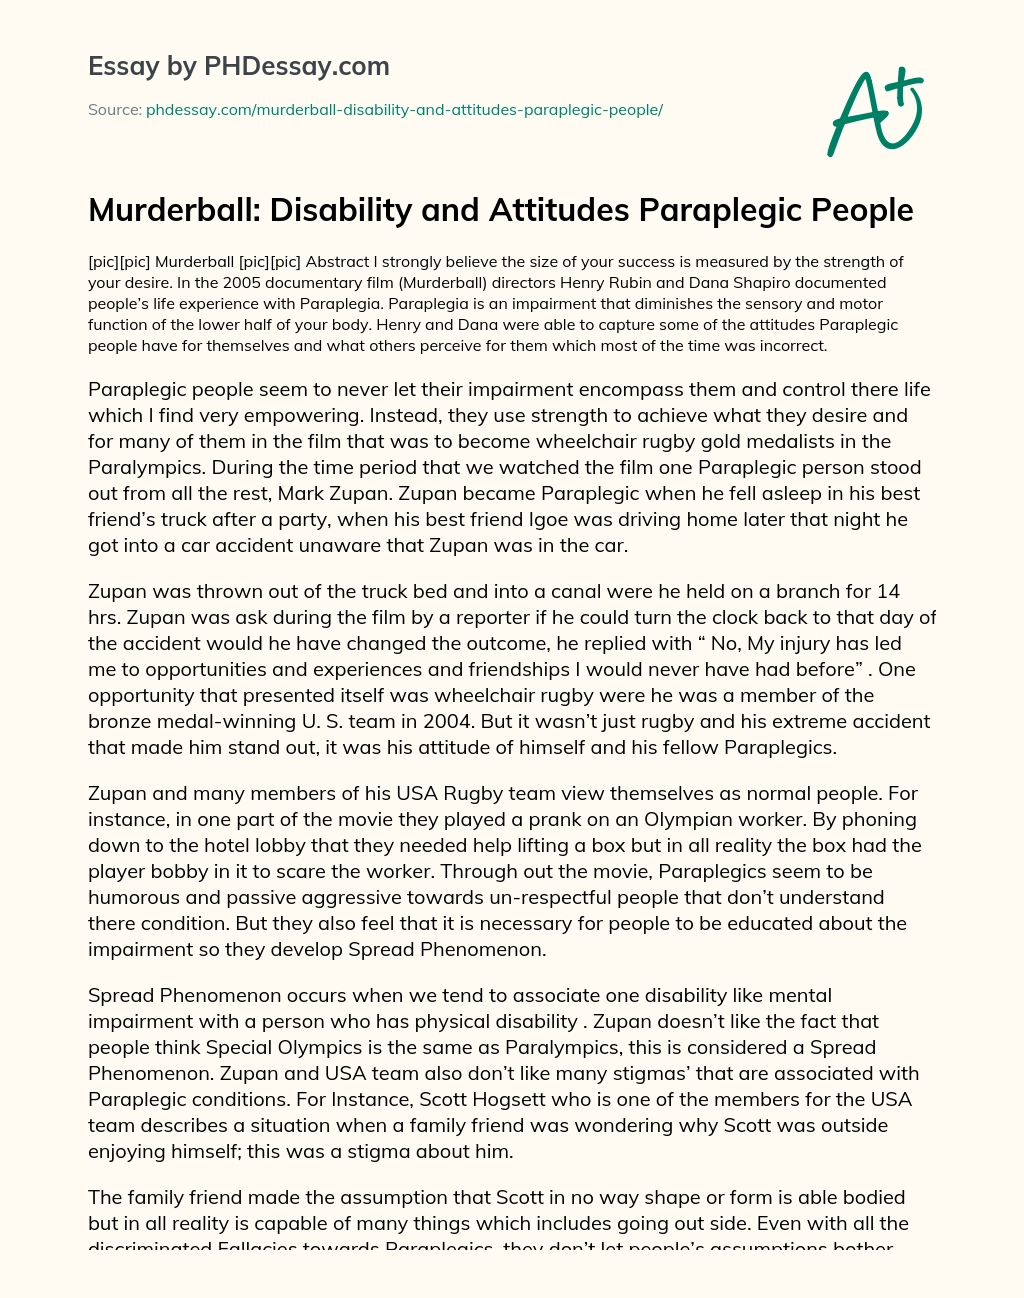 Murderball: Disability and Attitudes Paraplegic People essay